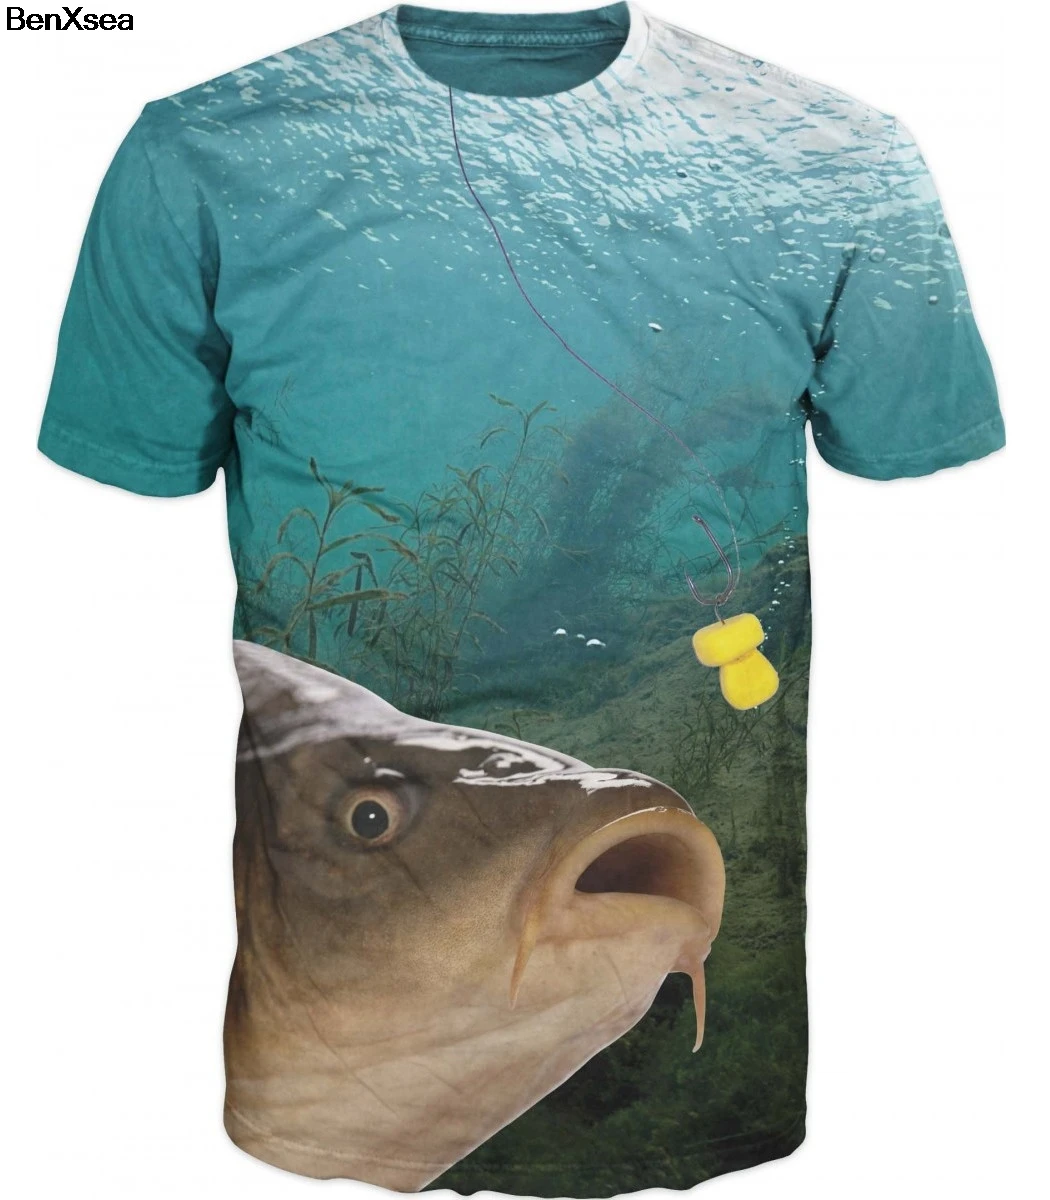 Летняя футболка с 3D принтом, крутая Мужская футболка с 3D рыбкой, хобби, футболка с карпом, наряды, унисекс, милые хипстерские рубашки для девочек, оверсайз - Цвет: Красный